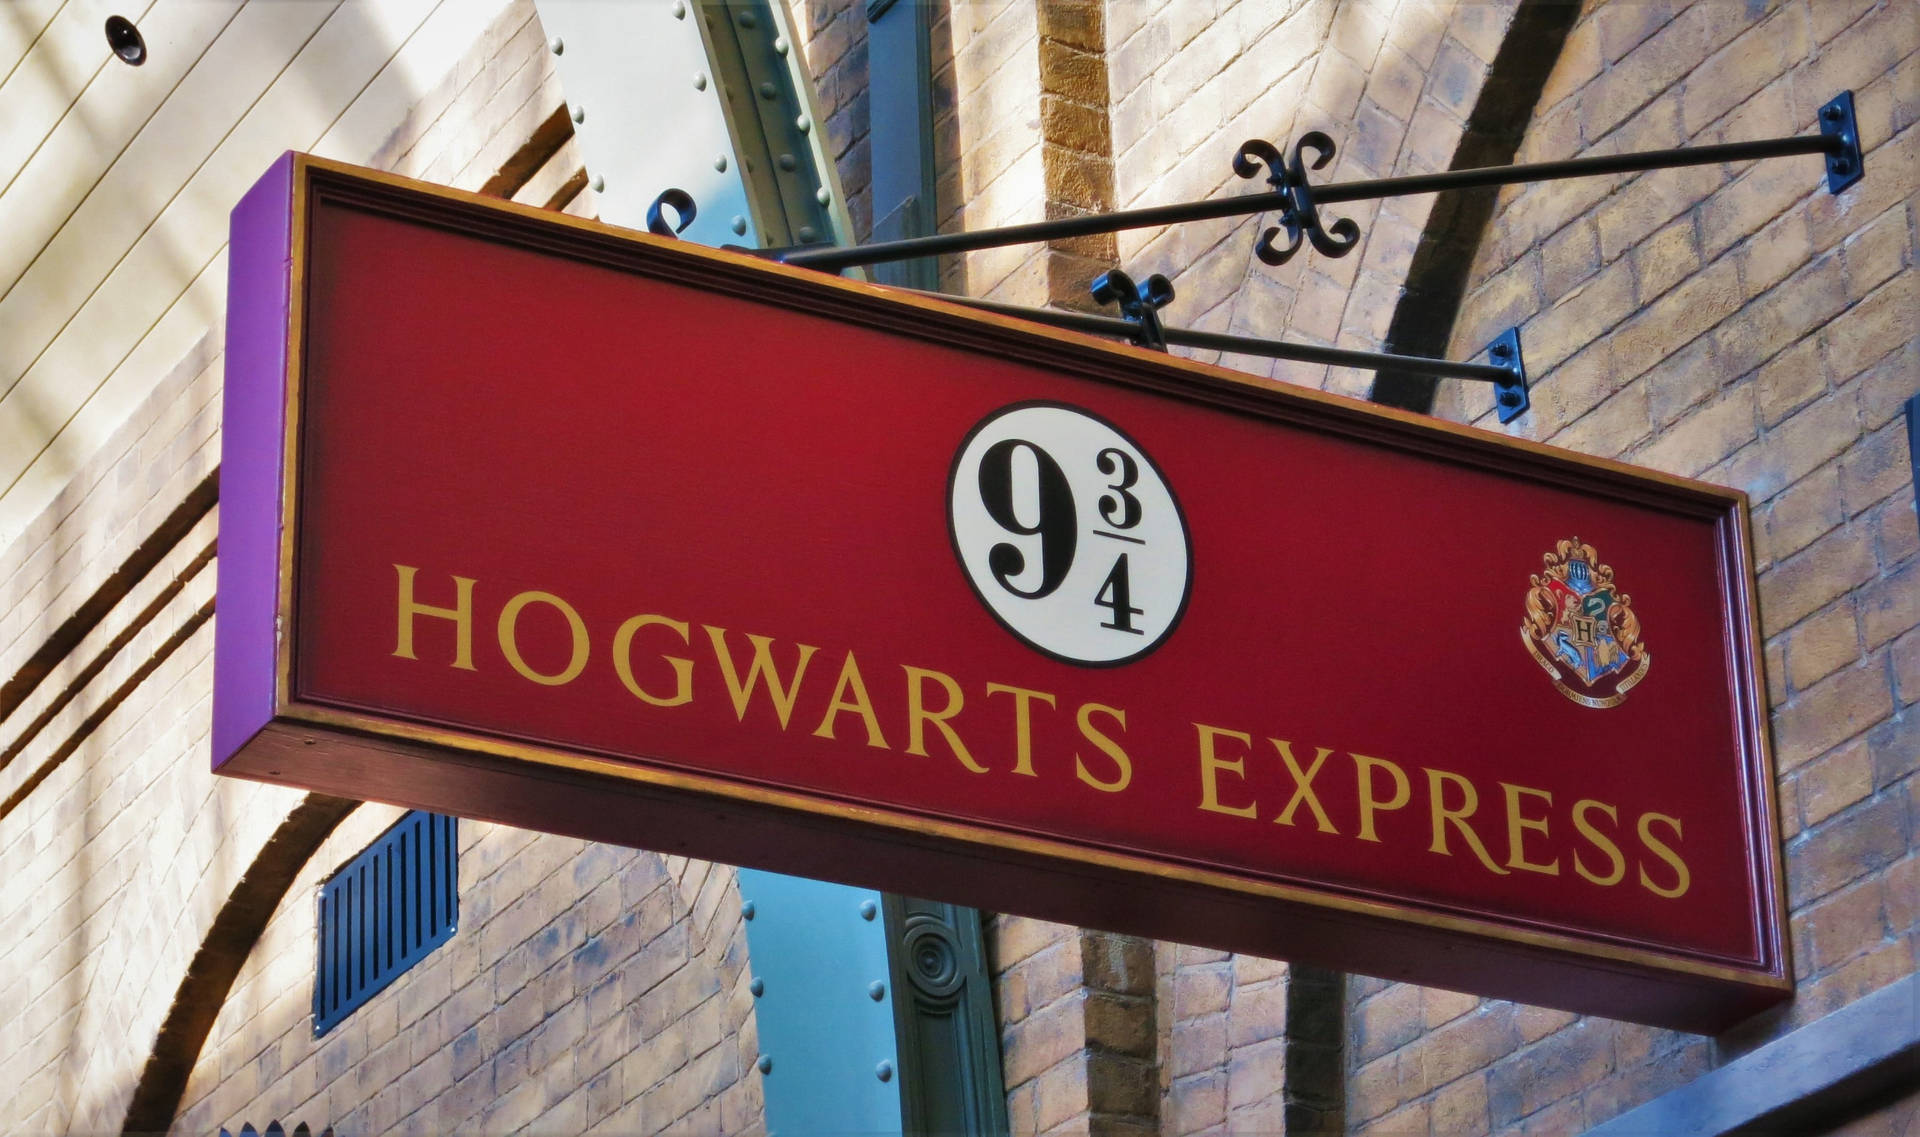 Seje Harry Potter Hogwarts Express Wallpaper